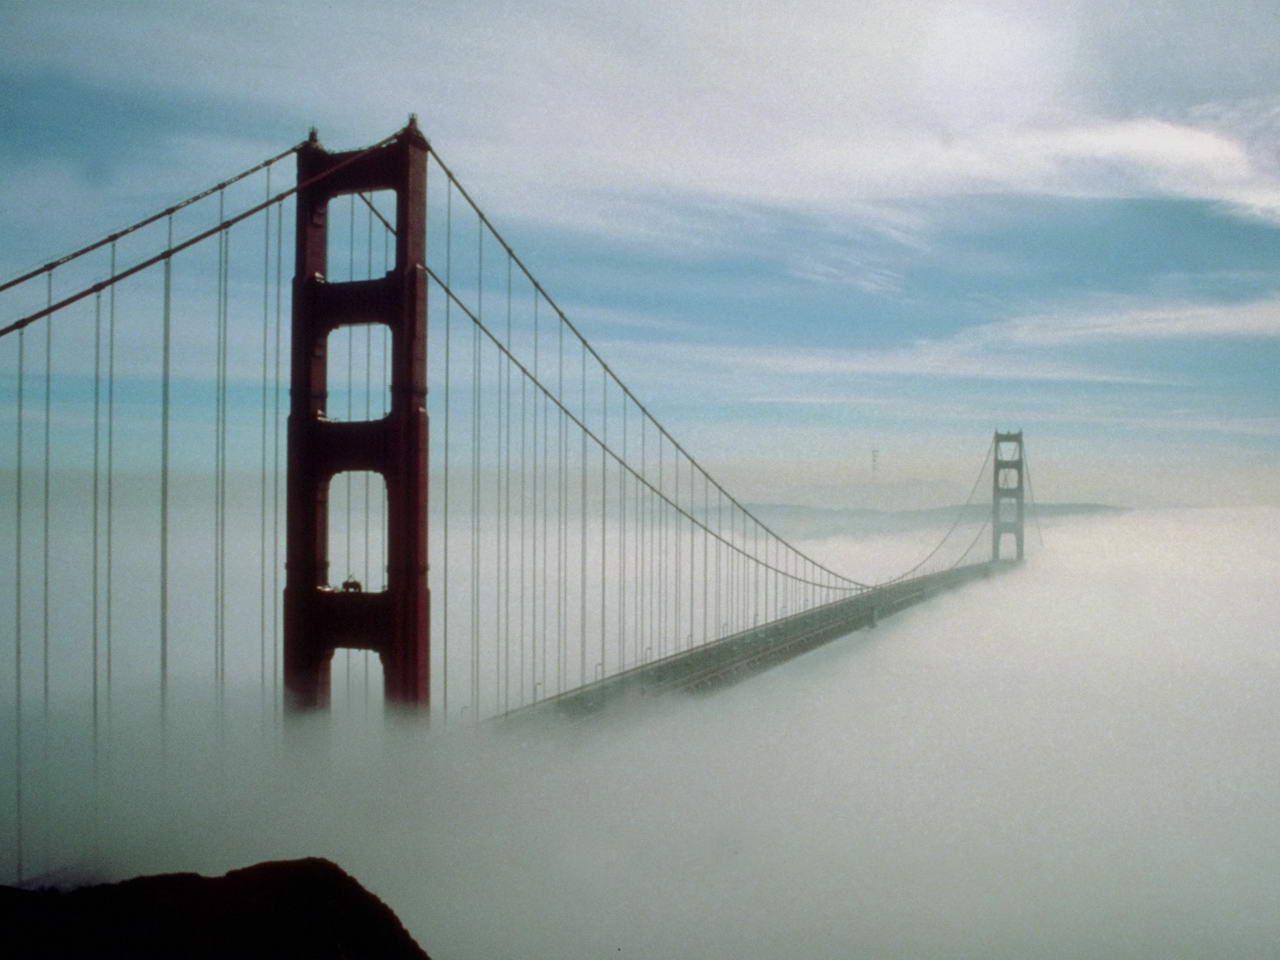 当船只驶进旧金山,从甲板上举目远望,首先映入眼帘的就是大桥的巨形钢